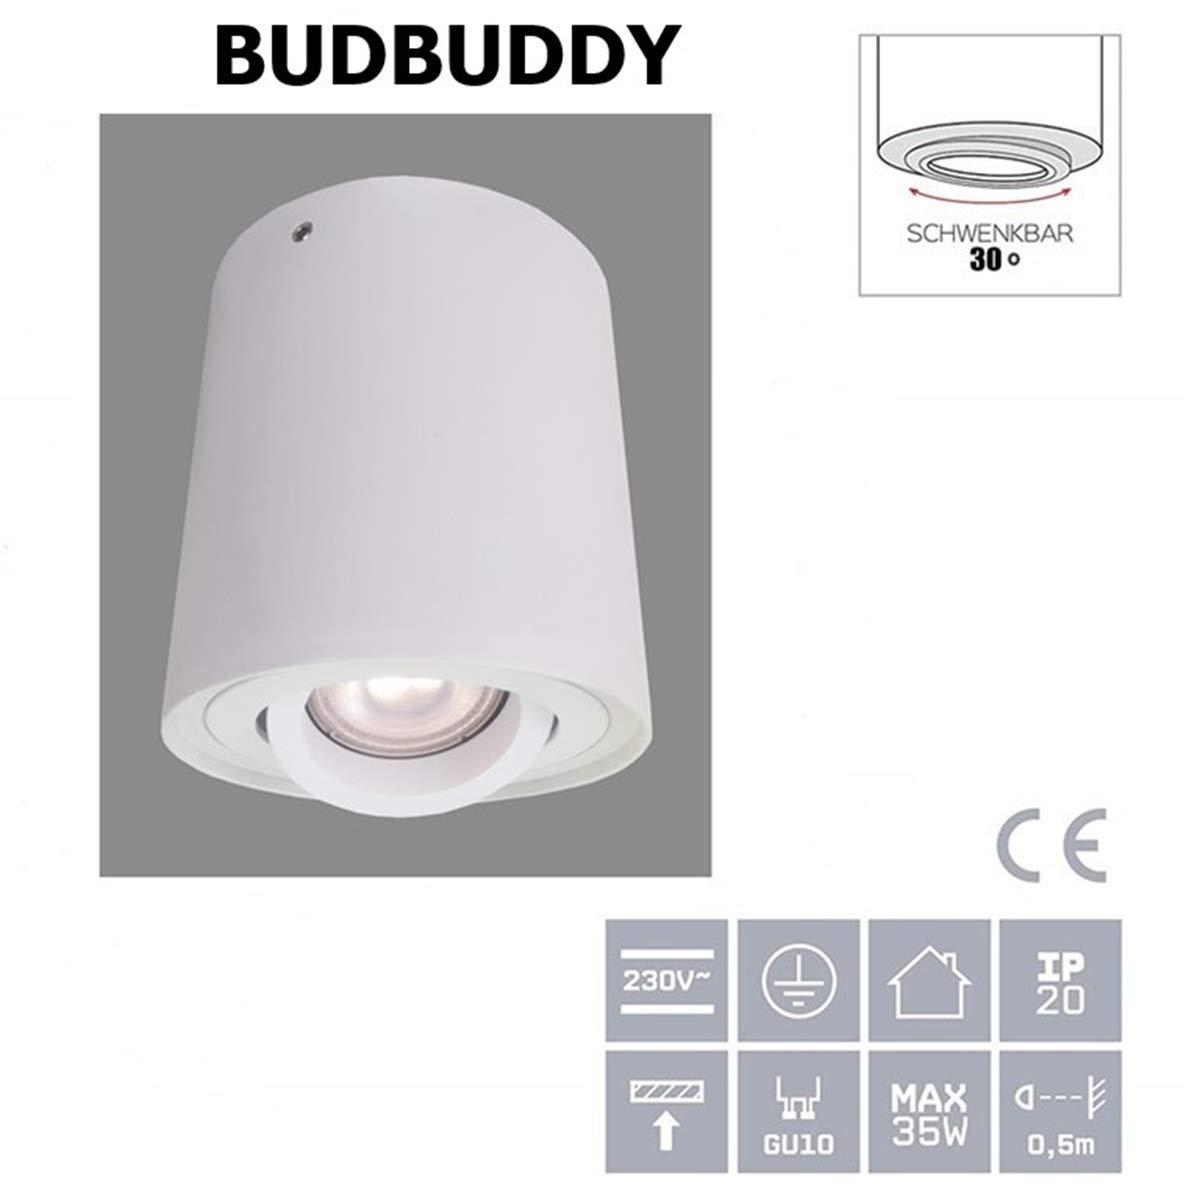 Budbuddy LED Spot Light Round Ceiling Spotlights Golden Ceiling Lamp Modern Ceilinglight Adjustable Spotlights Wall Spotlamps Socket GU10 230V [5W Bulb Included] Aluminium 2